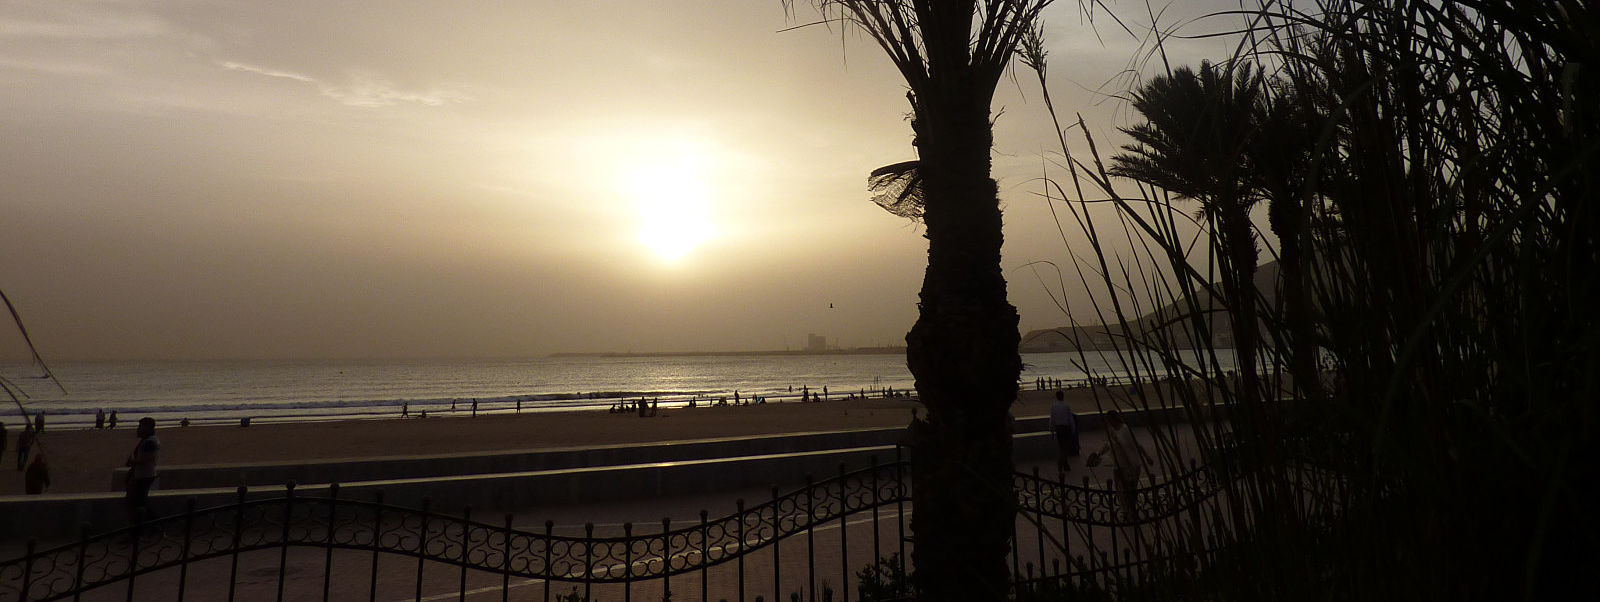 Un vol Agadir pas cher avec Algofly illustré par un coucher de soleil sur la promenade de bord de mer.